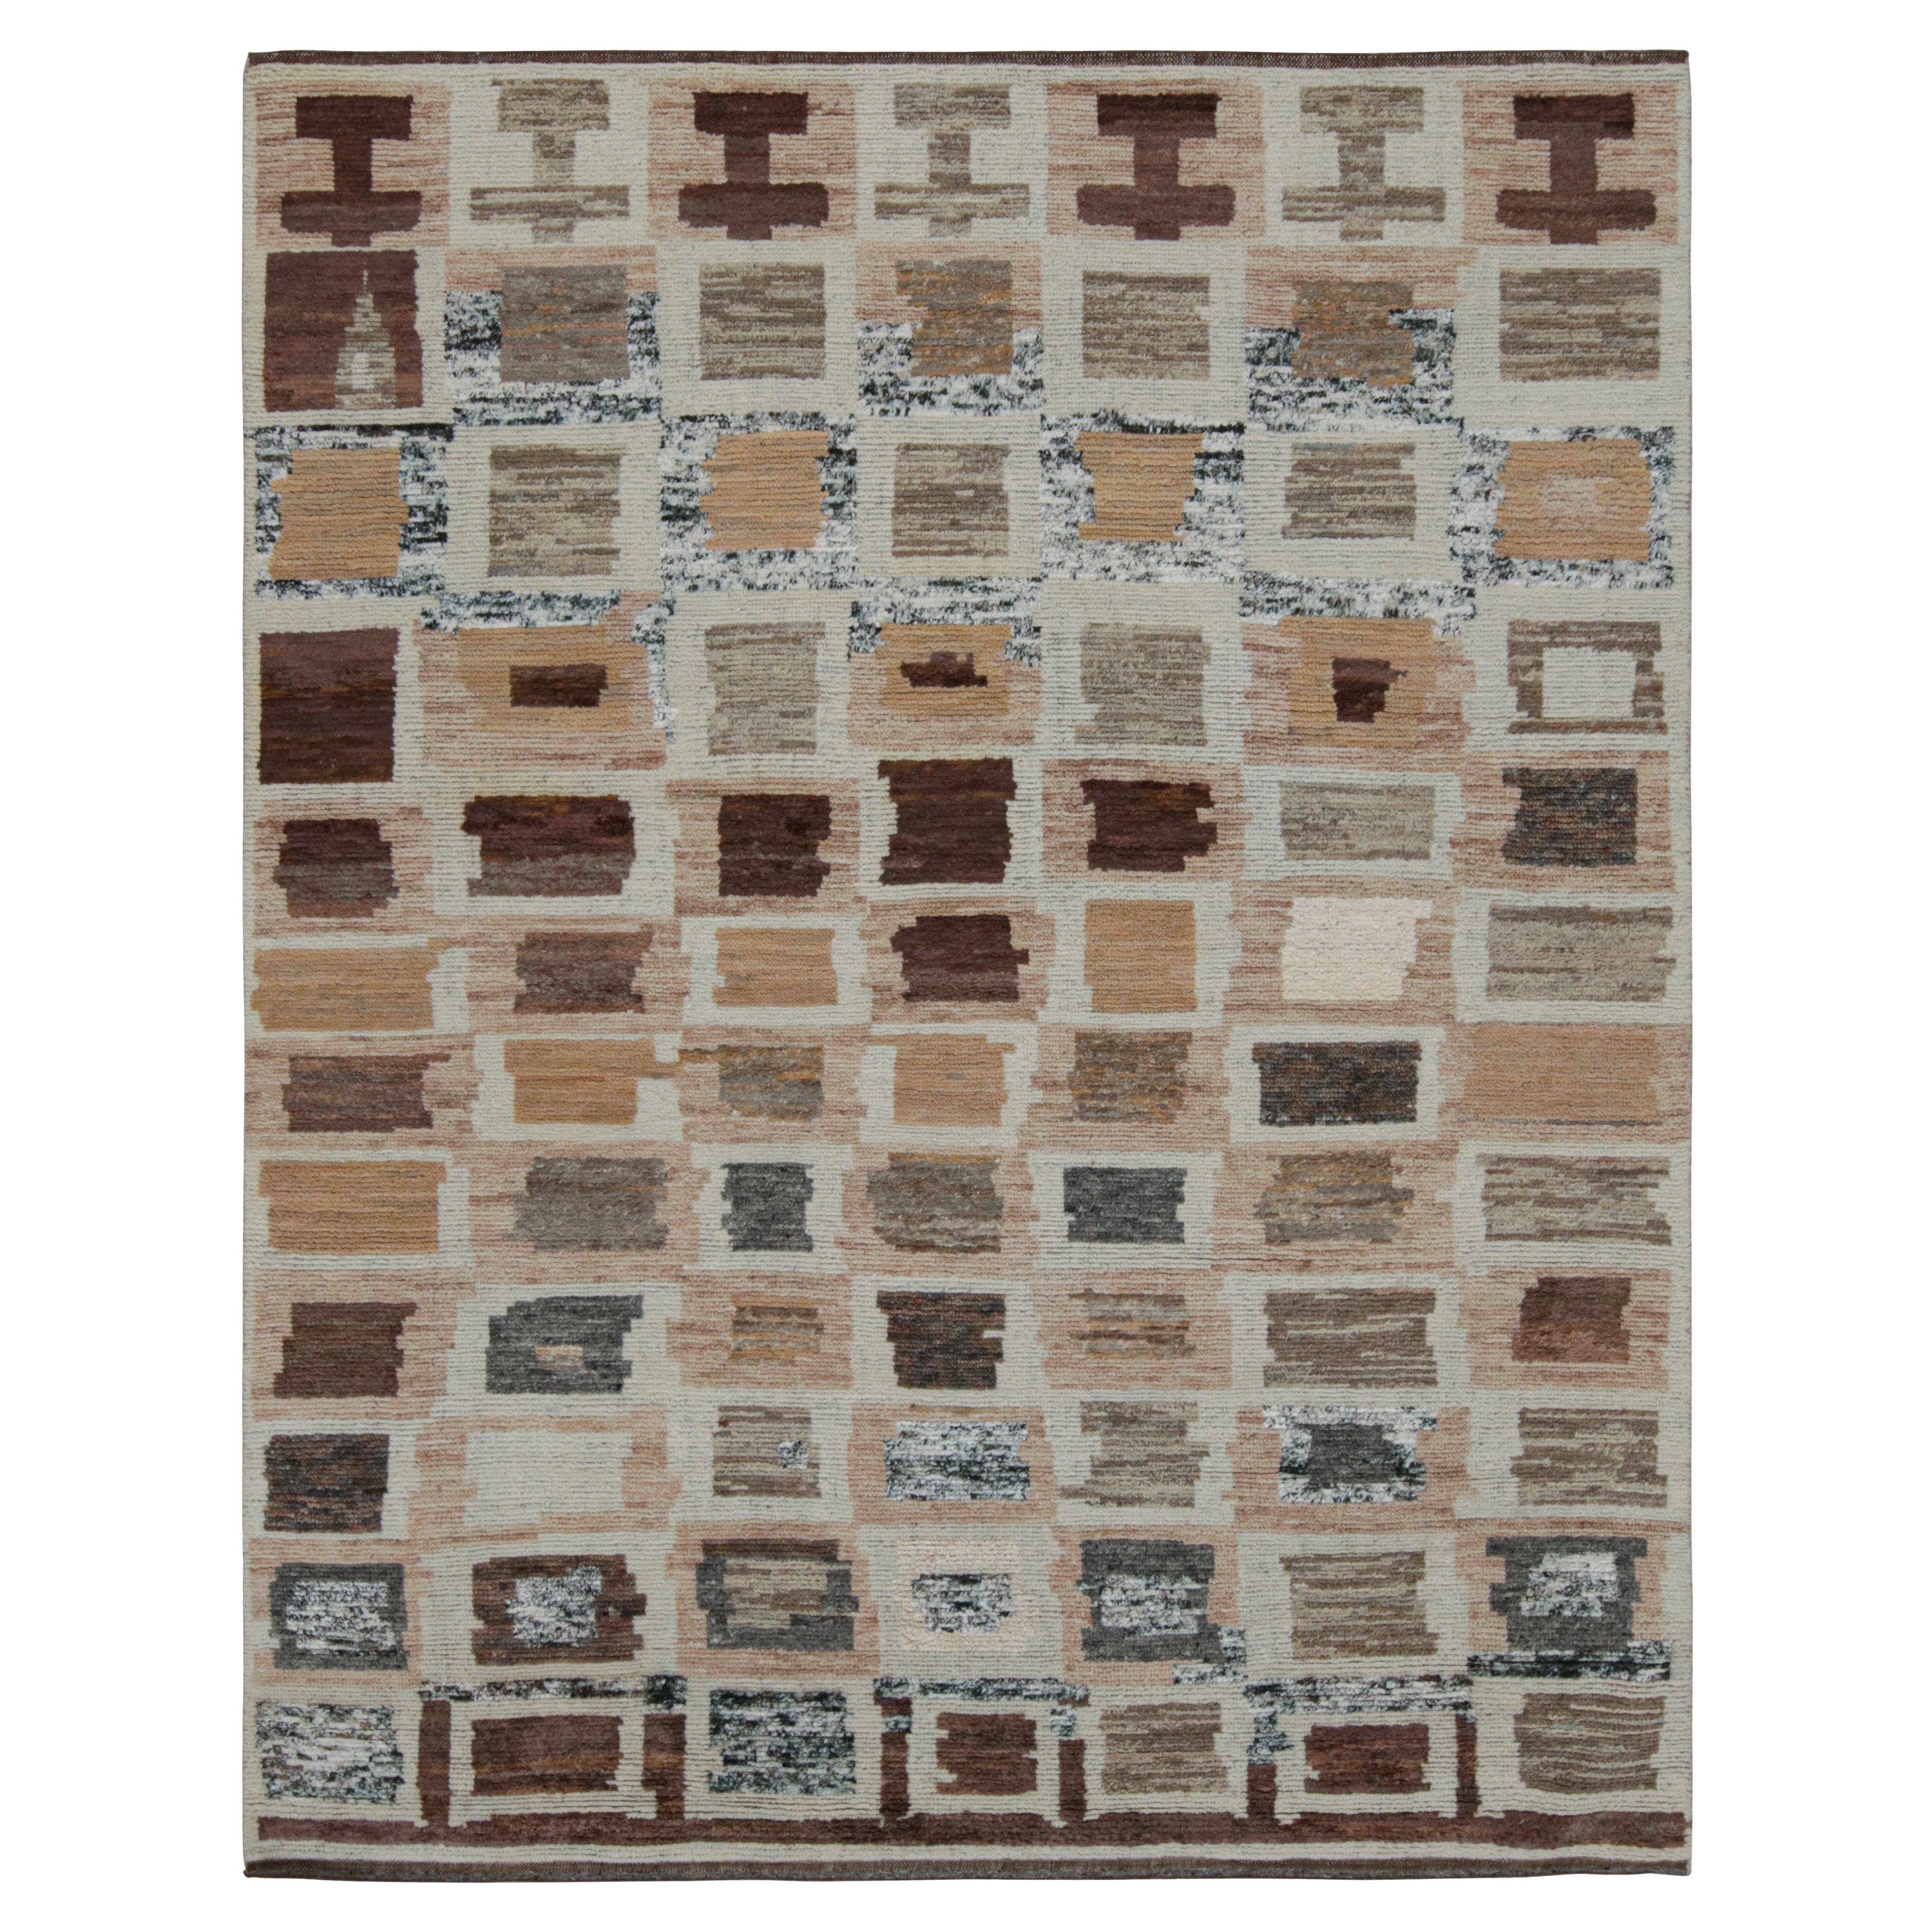 Rug & Kilim's Tapis géométrique de style marocain en beige-brun et gris